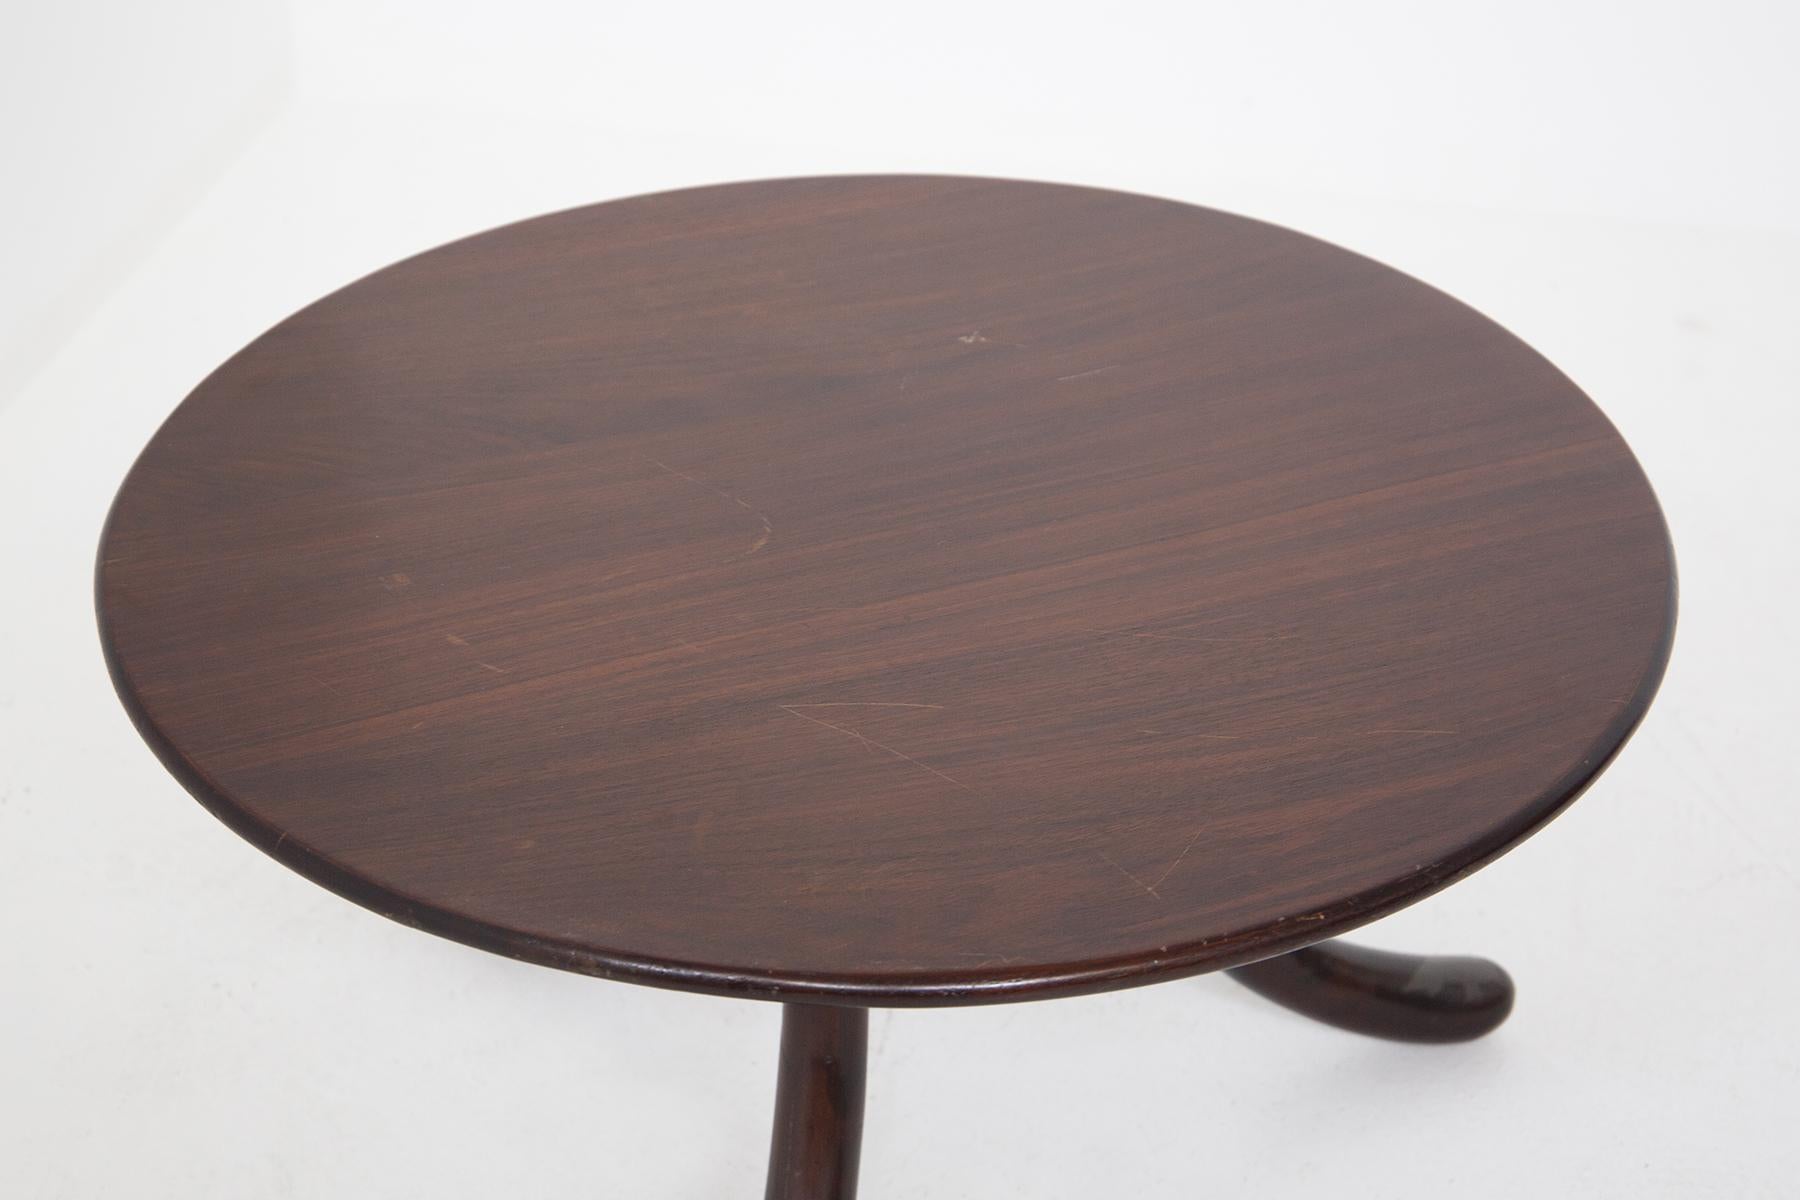 Runder italienischer Vintage-Tisch aus den 1950er Jahren, der Osvaldo Borsani zugeschrieben wird. Der runde italienische Vintage-Tisch ist in seine Seitenteile klappbar. Unter der Tischplatte befinden sich zwei Schlösser oder Messingmechanismen, die